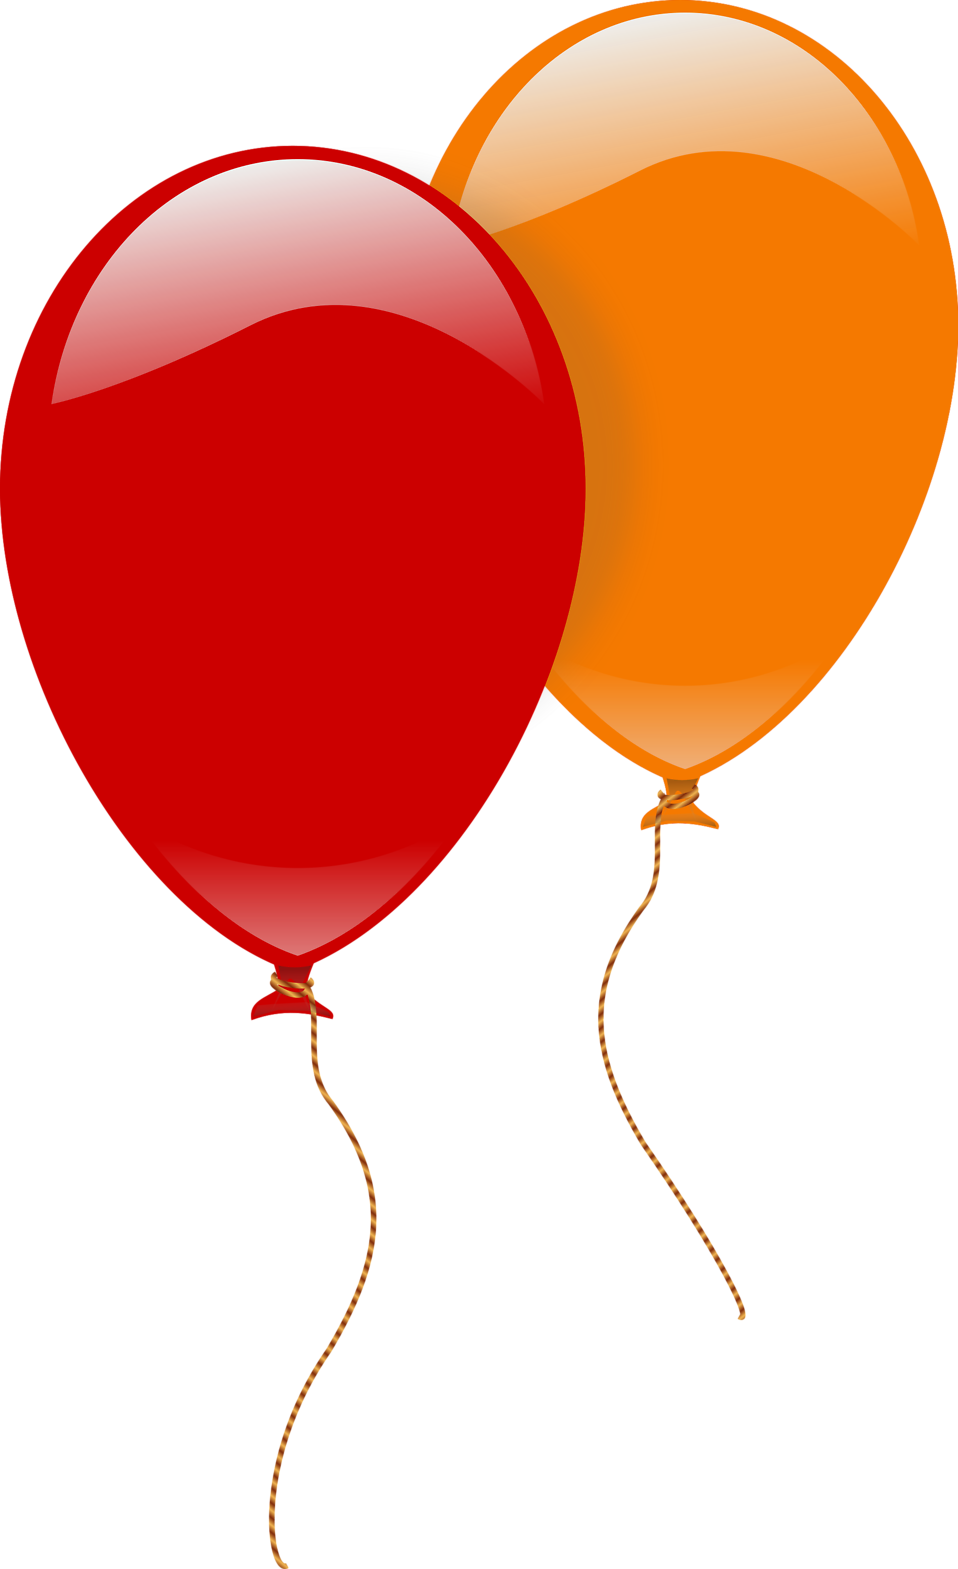 Free stock photo illustration. Clipart balloon orange